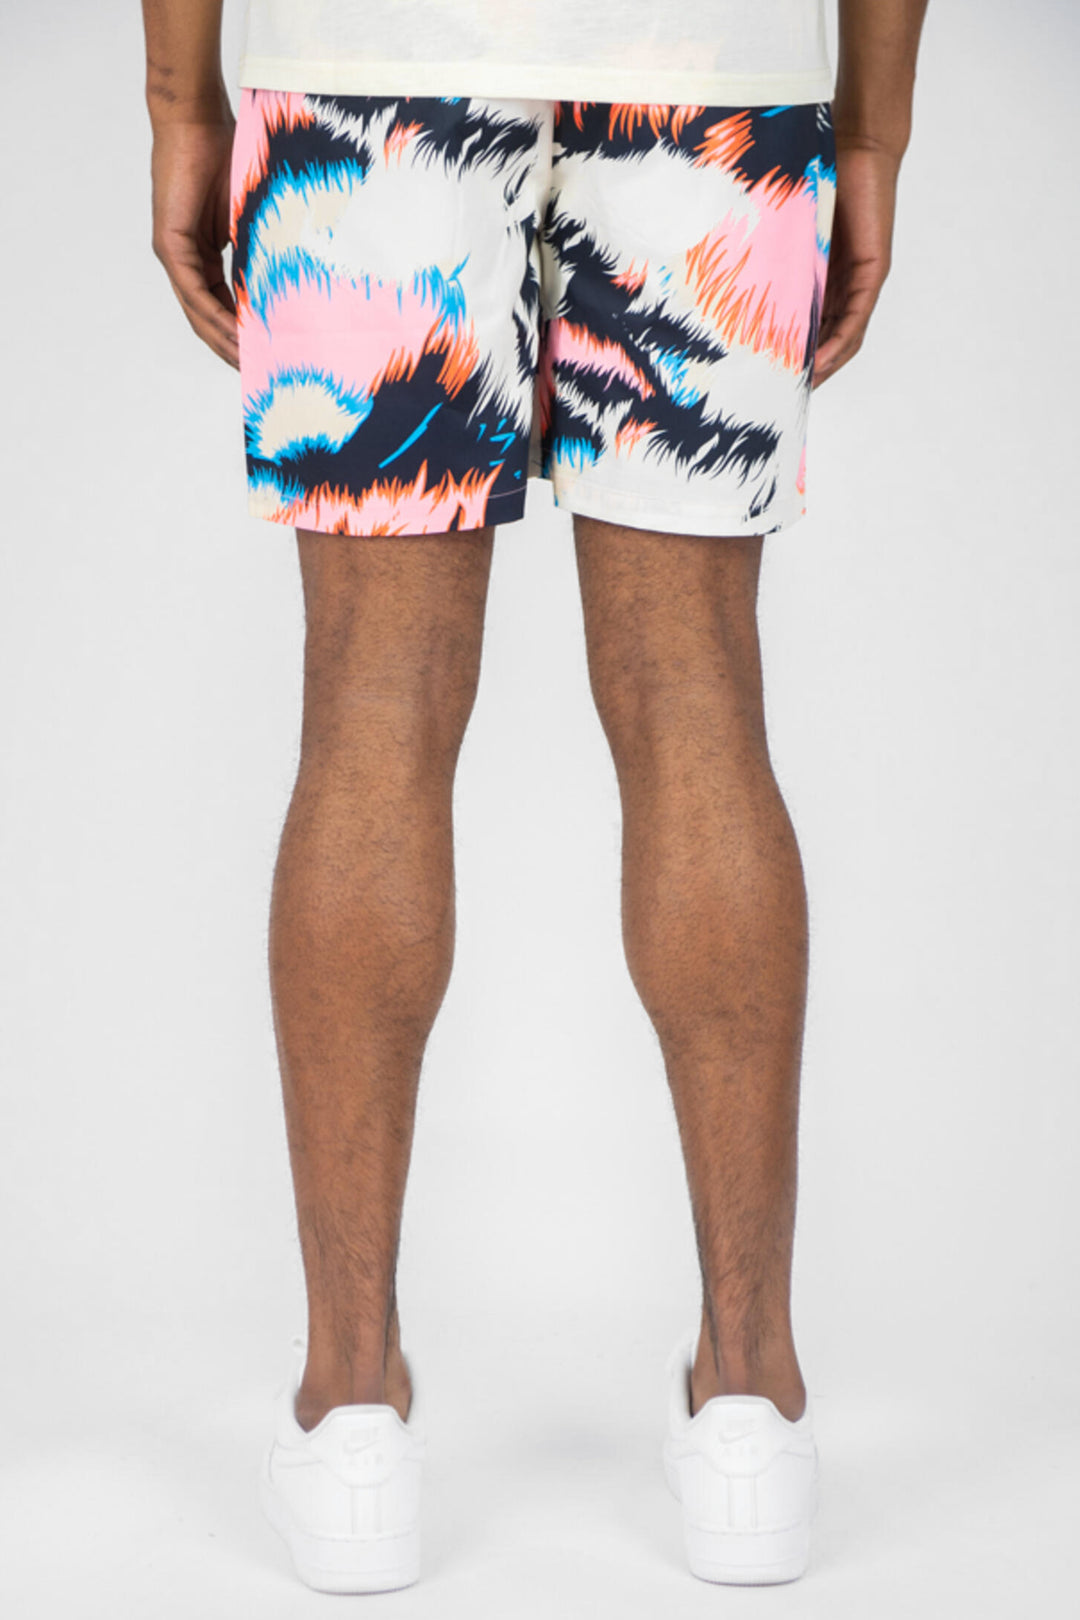 Tiger Board Shorts (Pink) (141-984) - Zamage